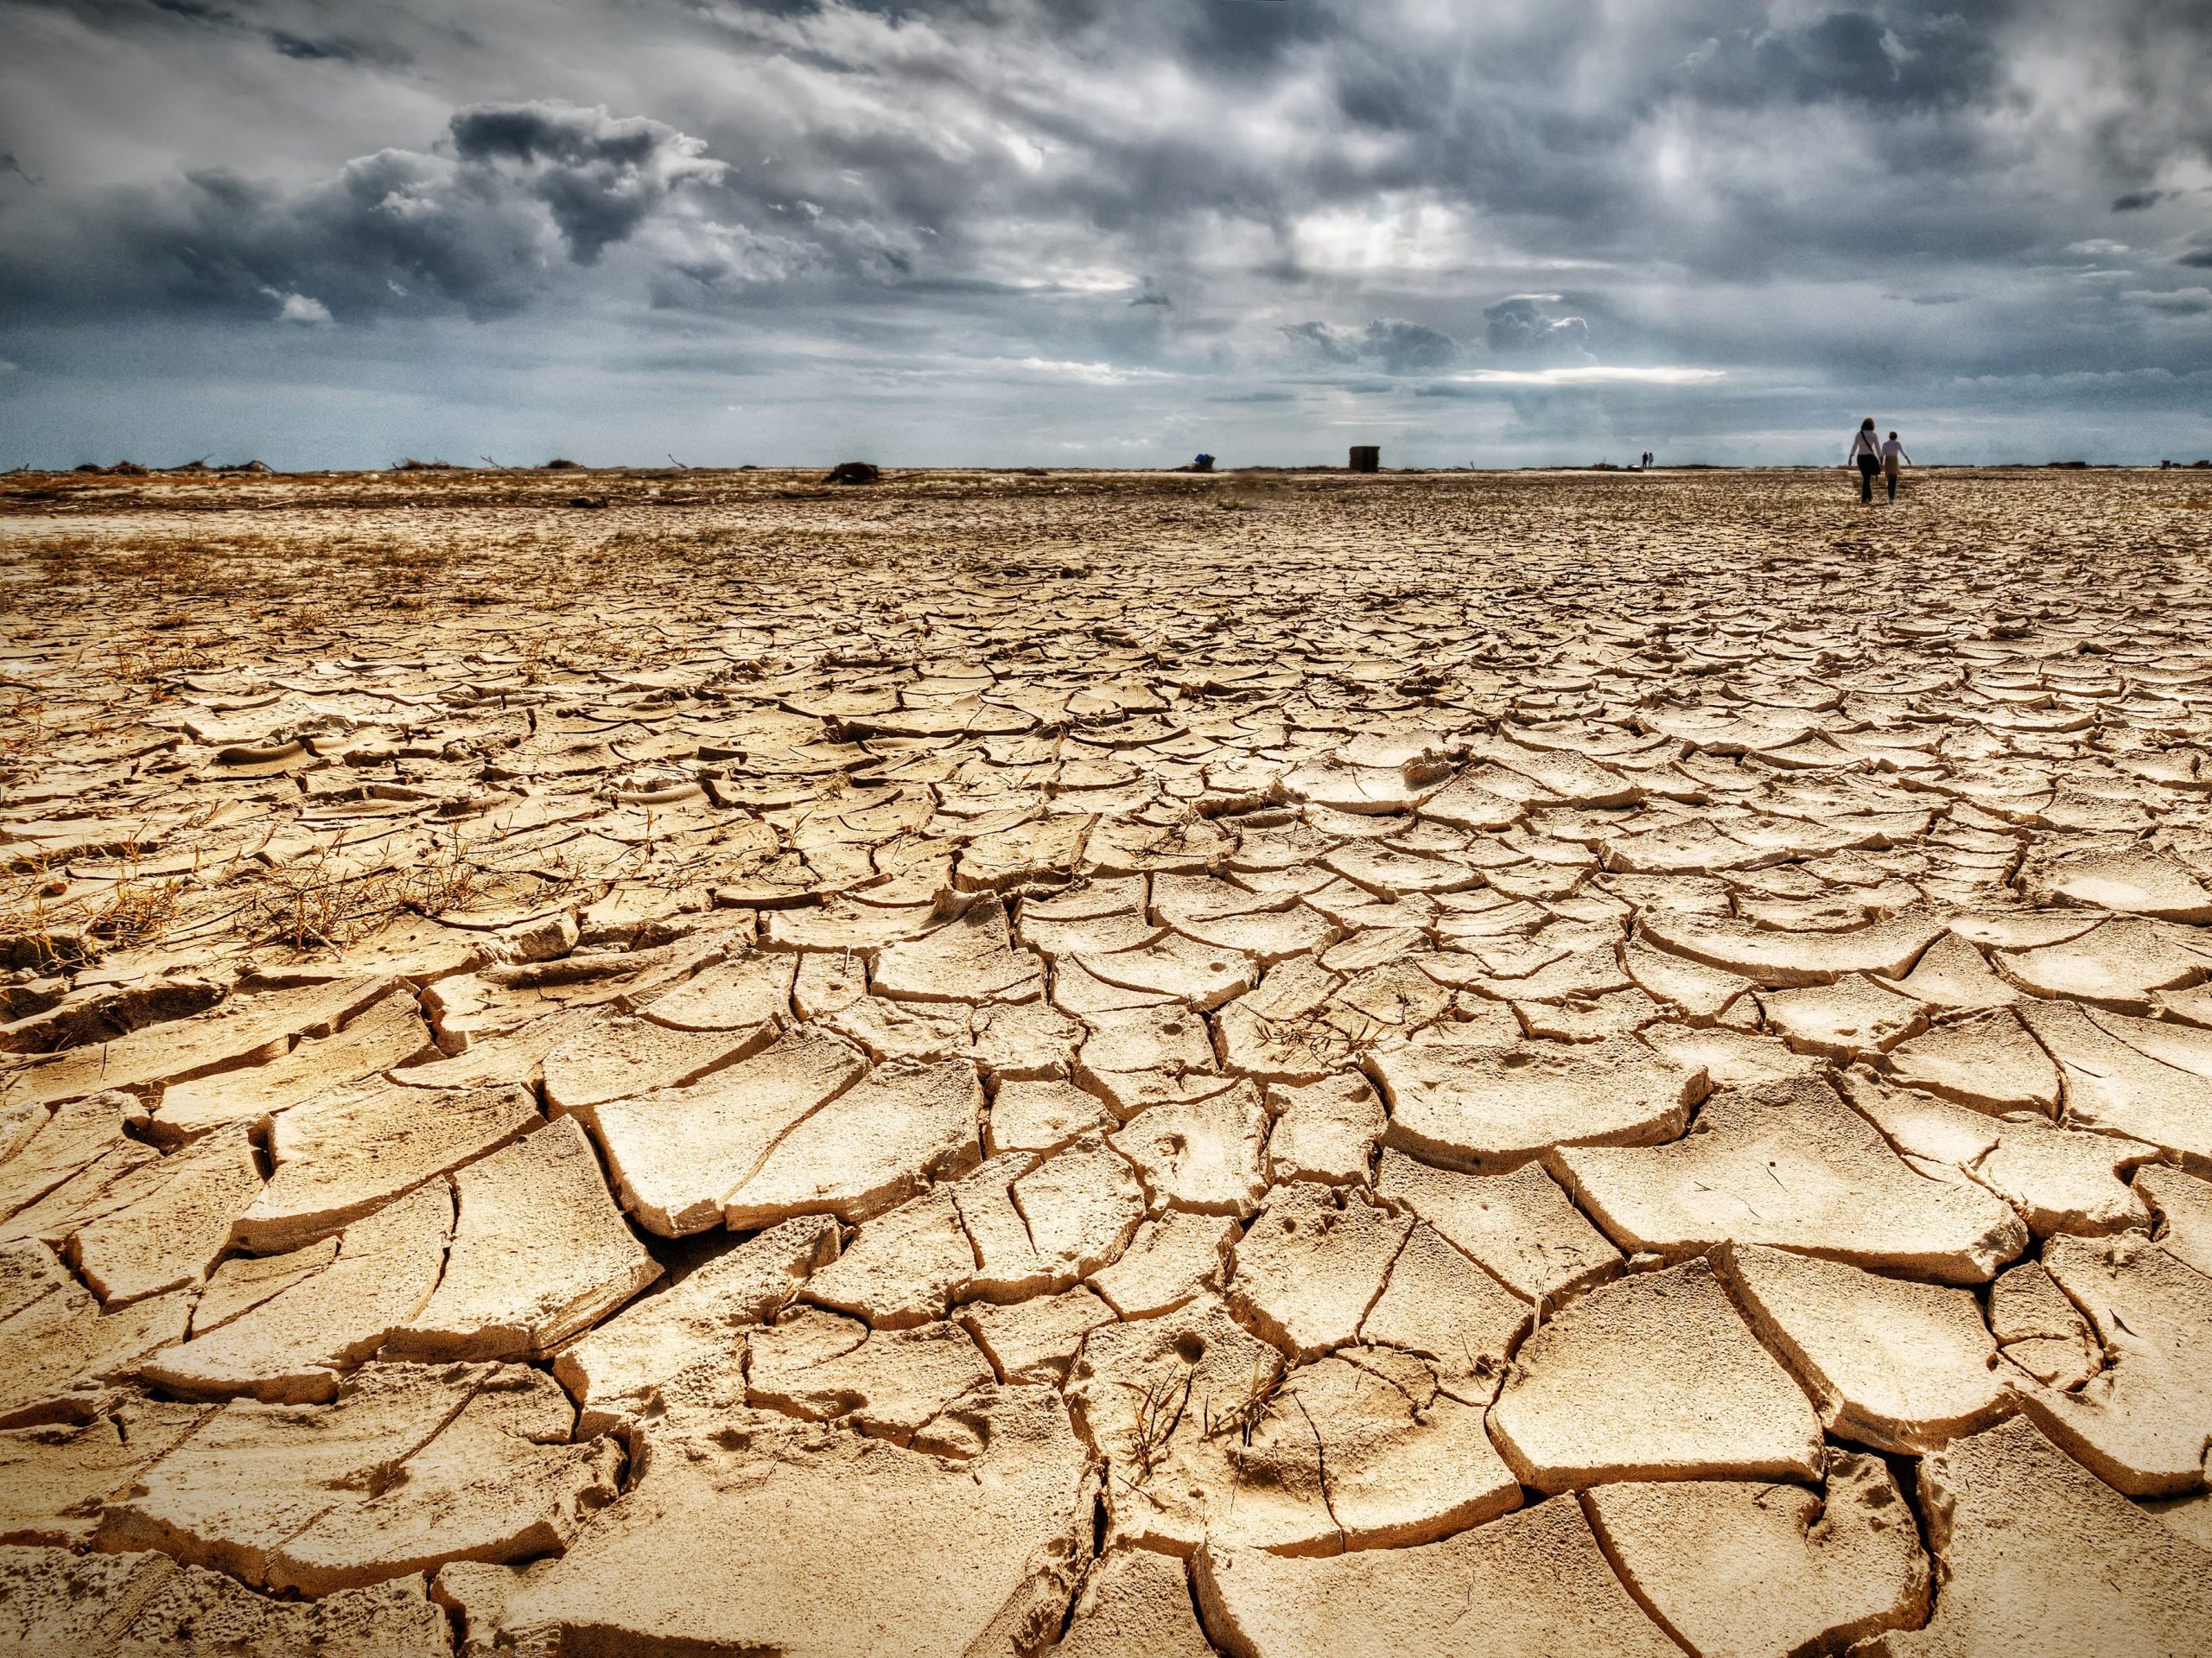 A flat drought landscape